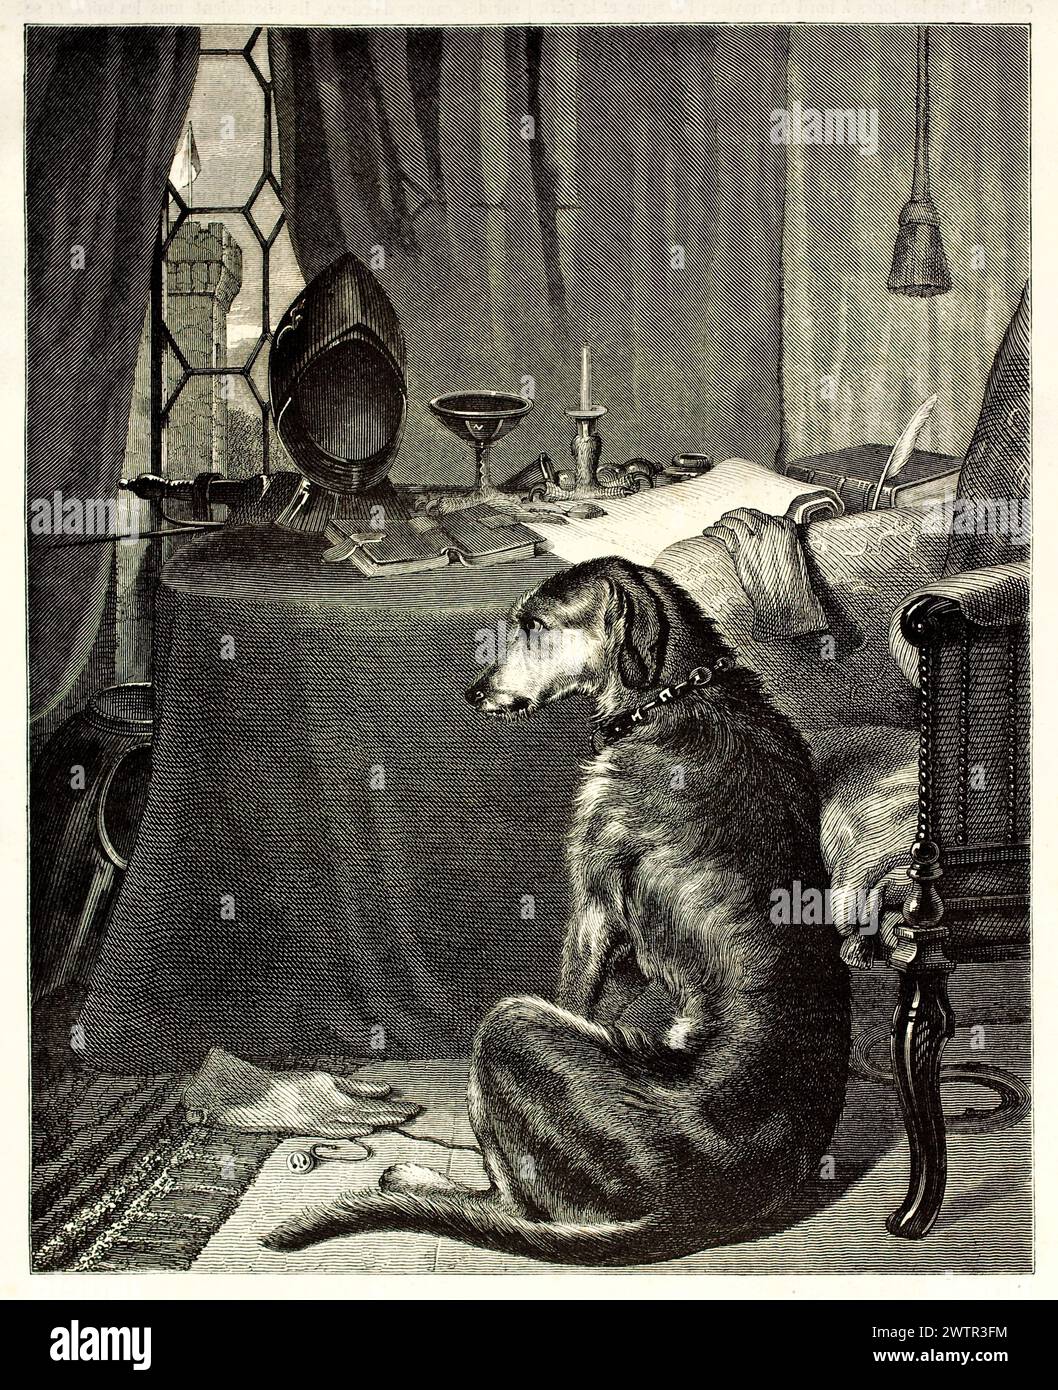 Alte gravierte Abbildung, die den Hund (Lehrer) zeigt, der auf dem Boden hockte. Erstellt von Freeman, veröffentlicht auf Magasin Pittoresque, Paris, 1852 Stockfoto